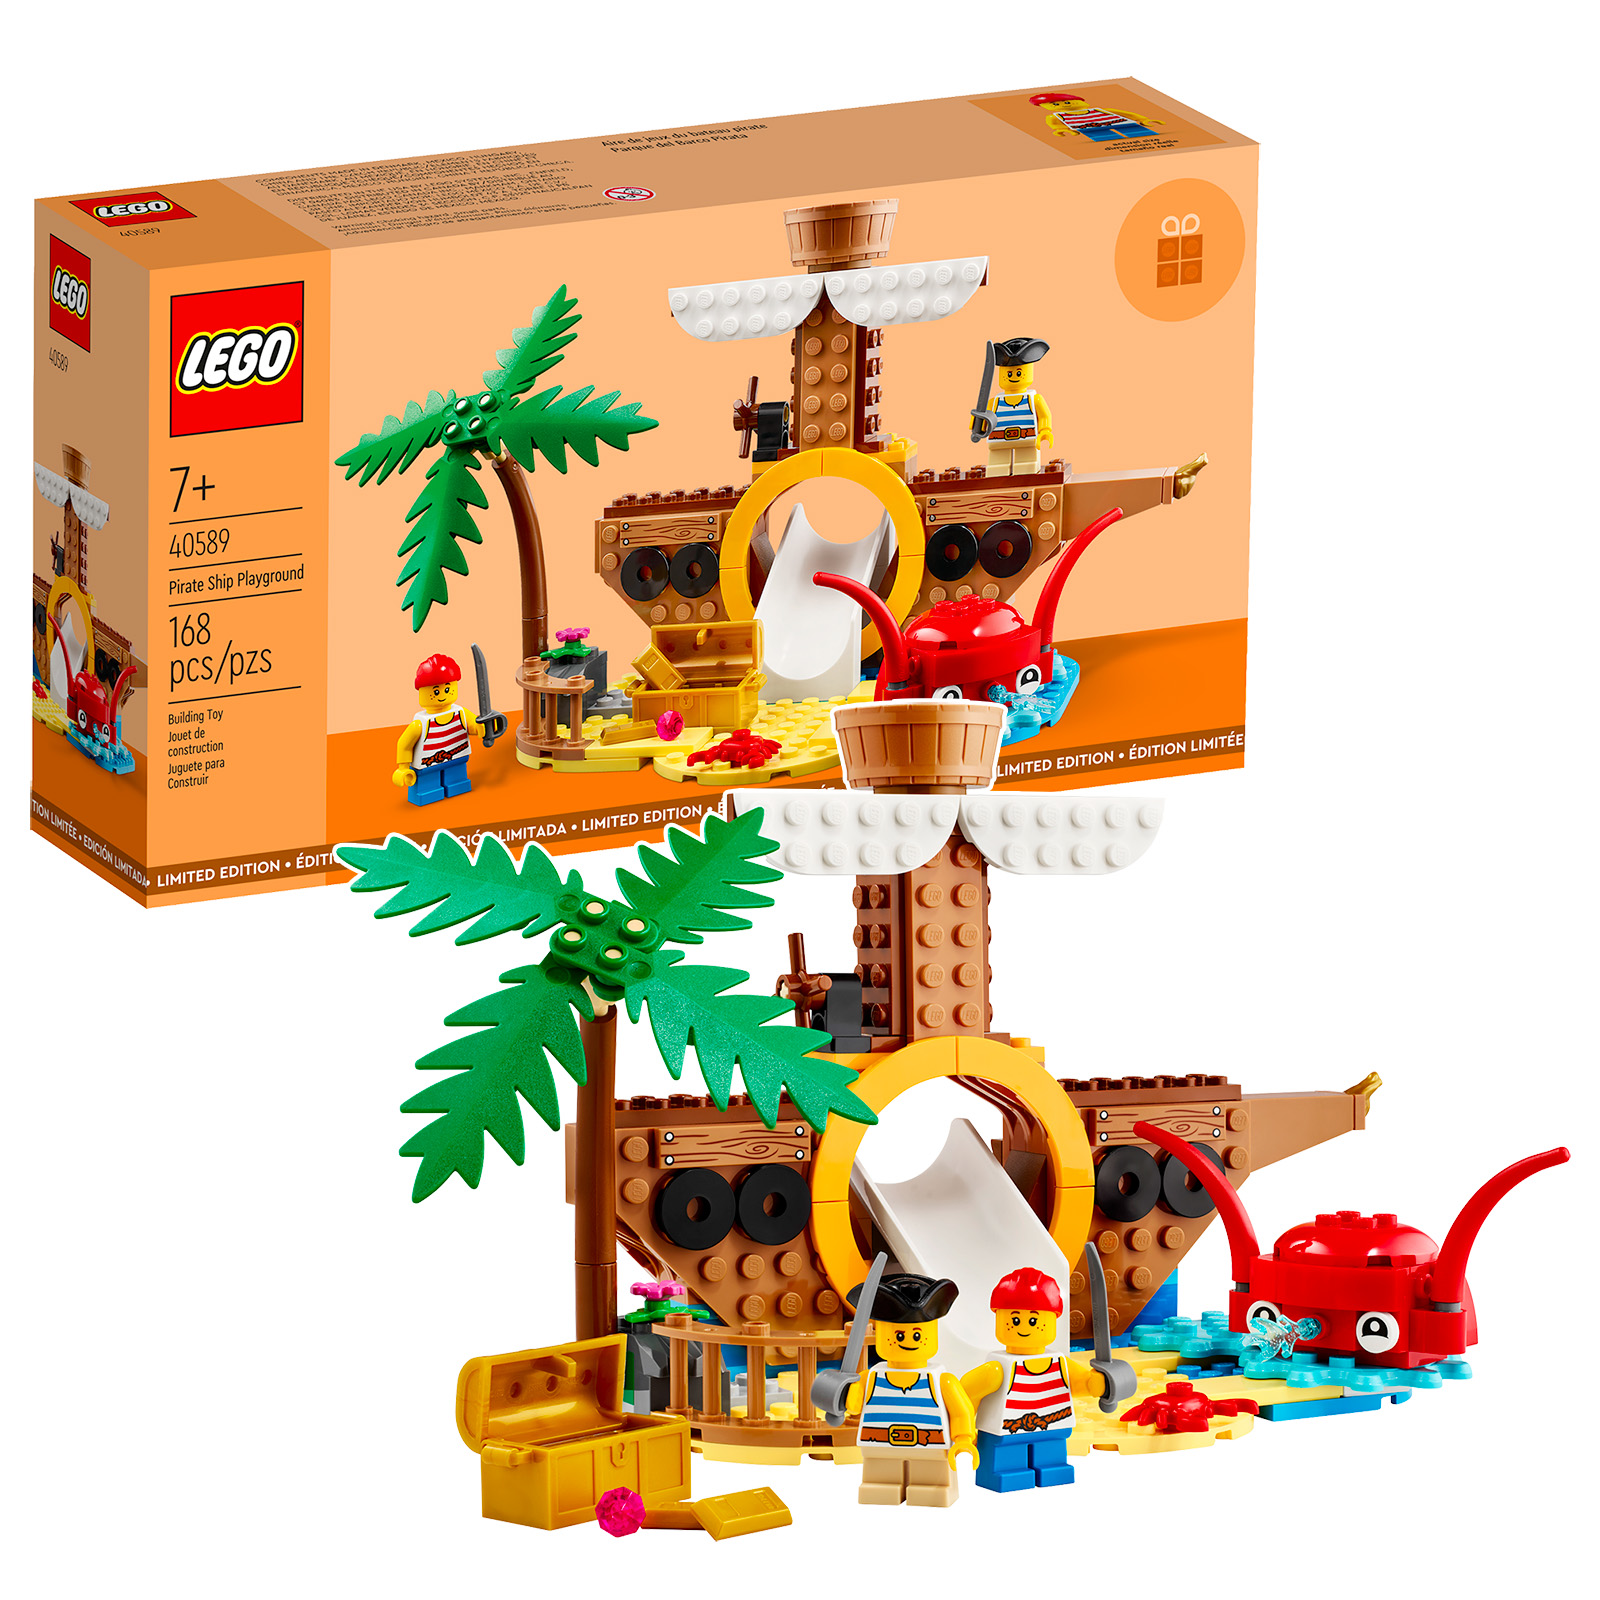 LEGO 40589 Pirate Ship Playground : les visuels officiels sont disponibles